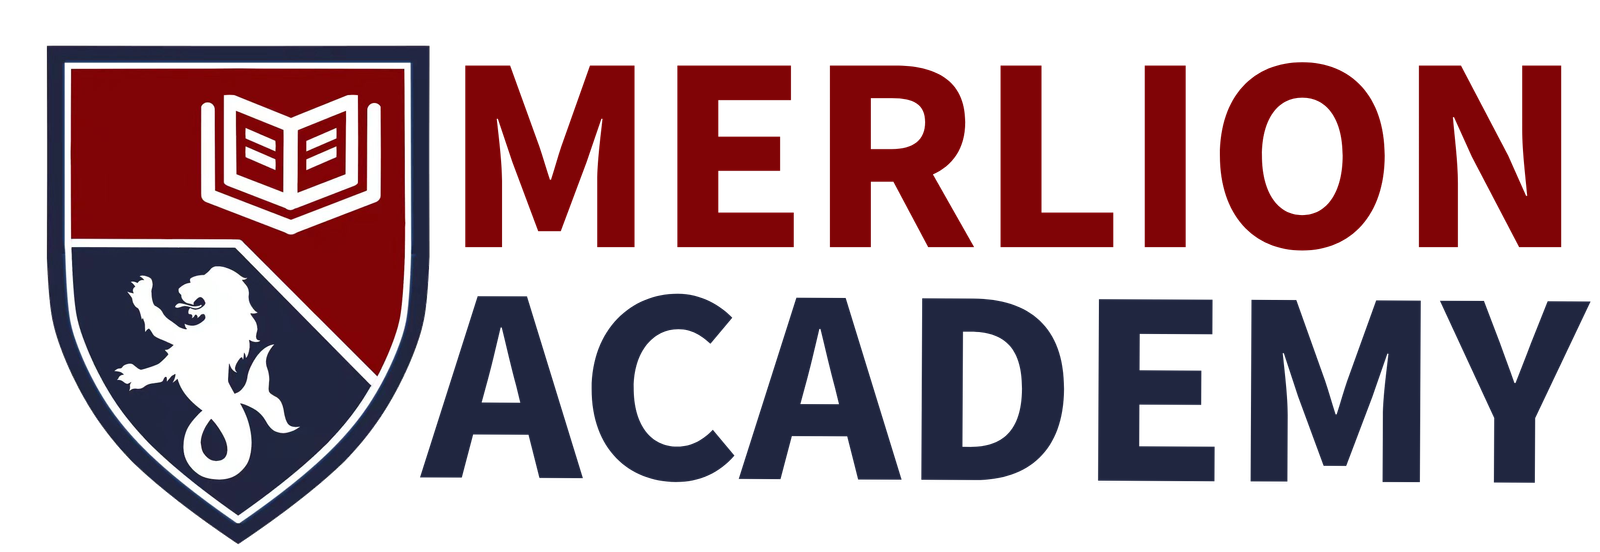 Merlion Academy